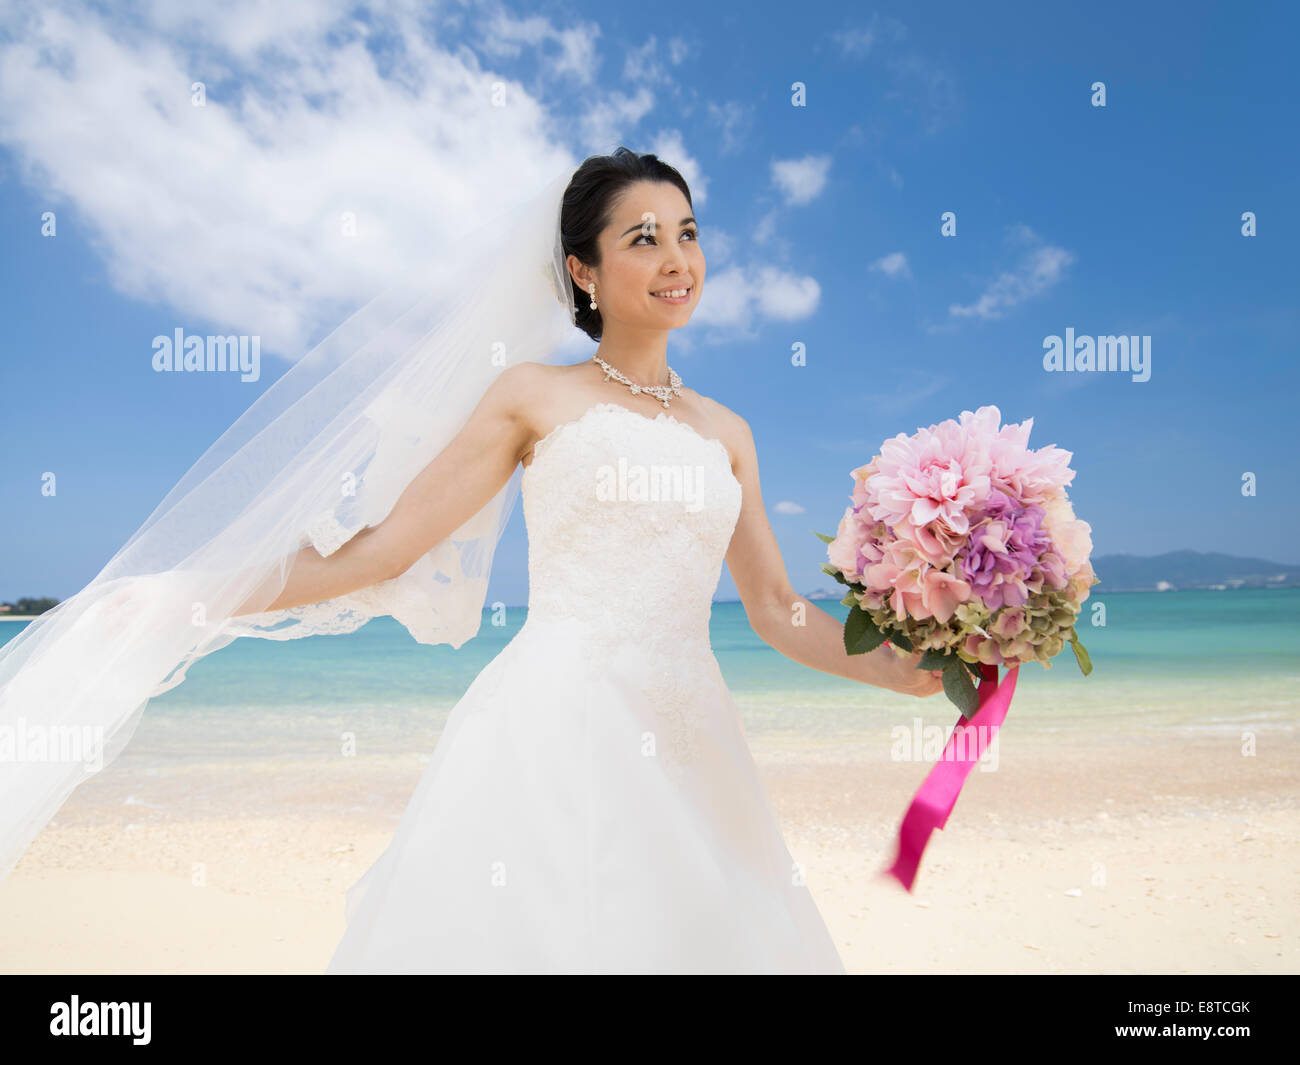 Razza mista, Asian / American sposa in bianco abito da sposa a destinazione matrimonio sulla spiaggia a Okinawa, Giappone Foto Stock